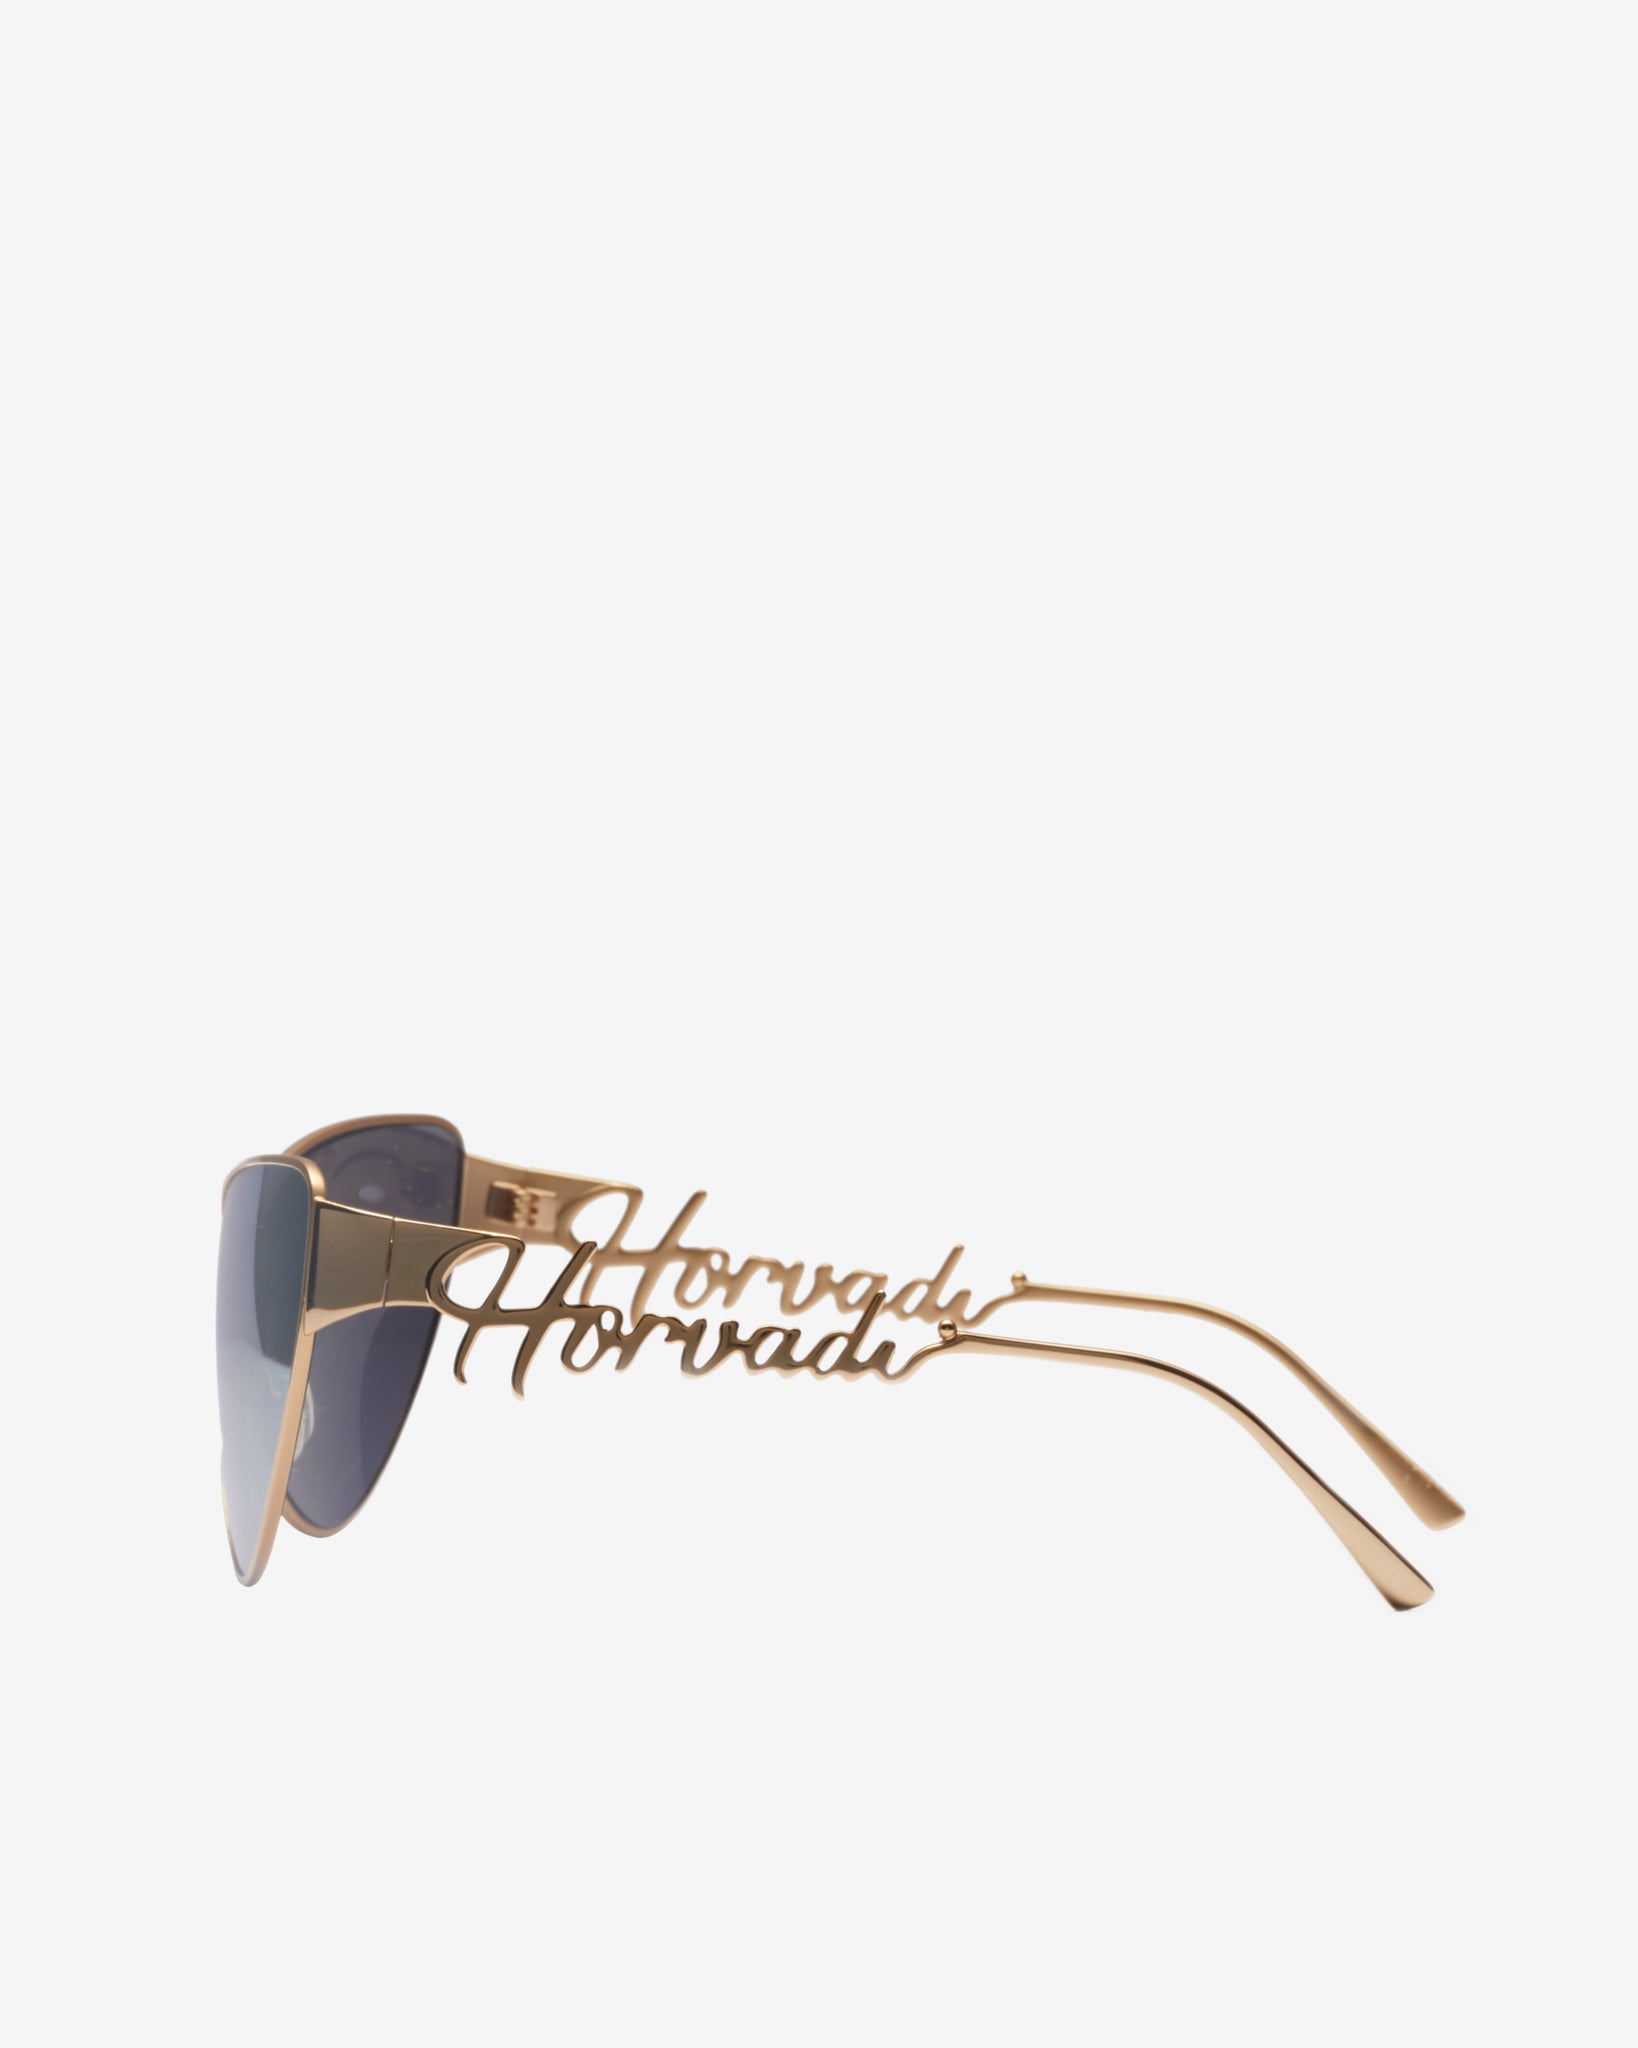 Horvadi Signature Gold Sunglasses